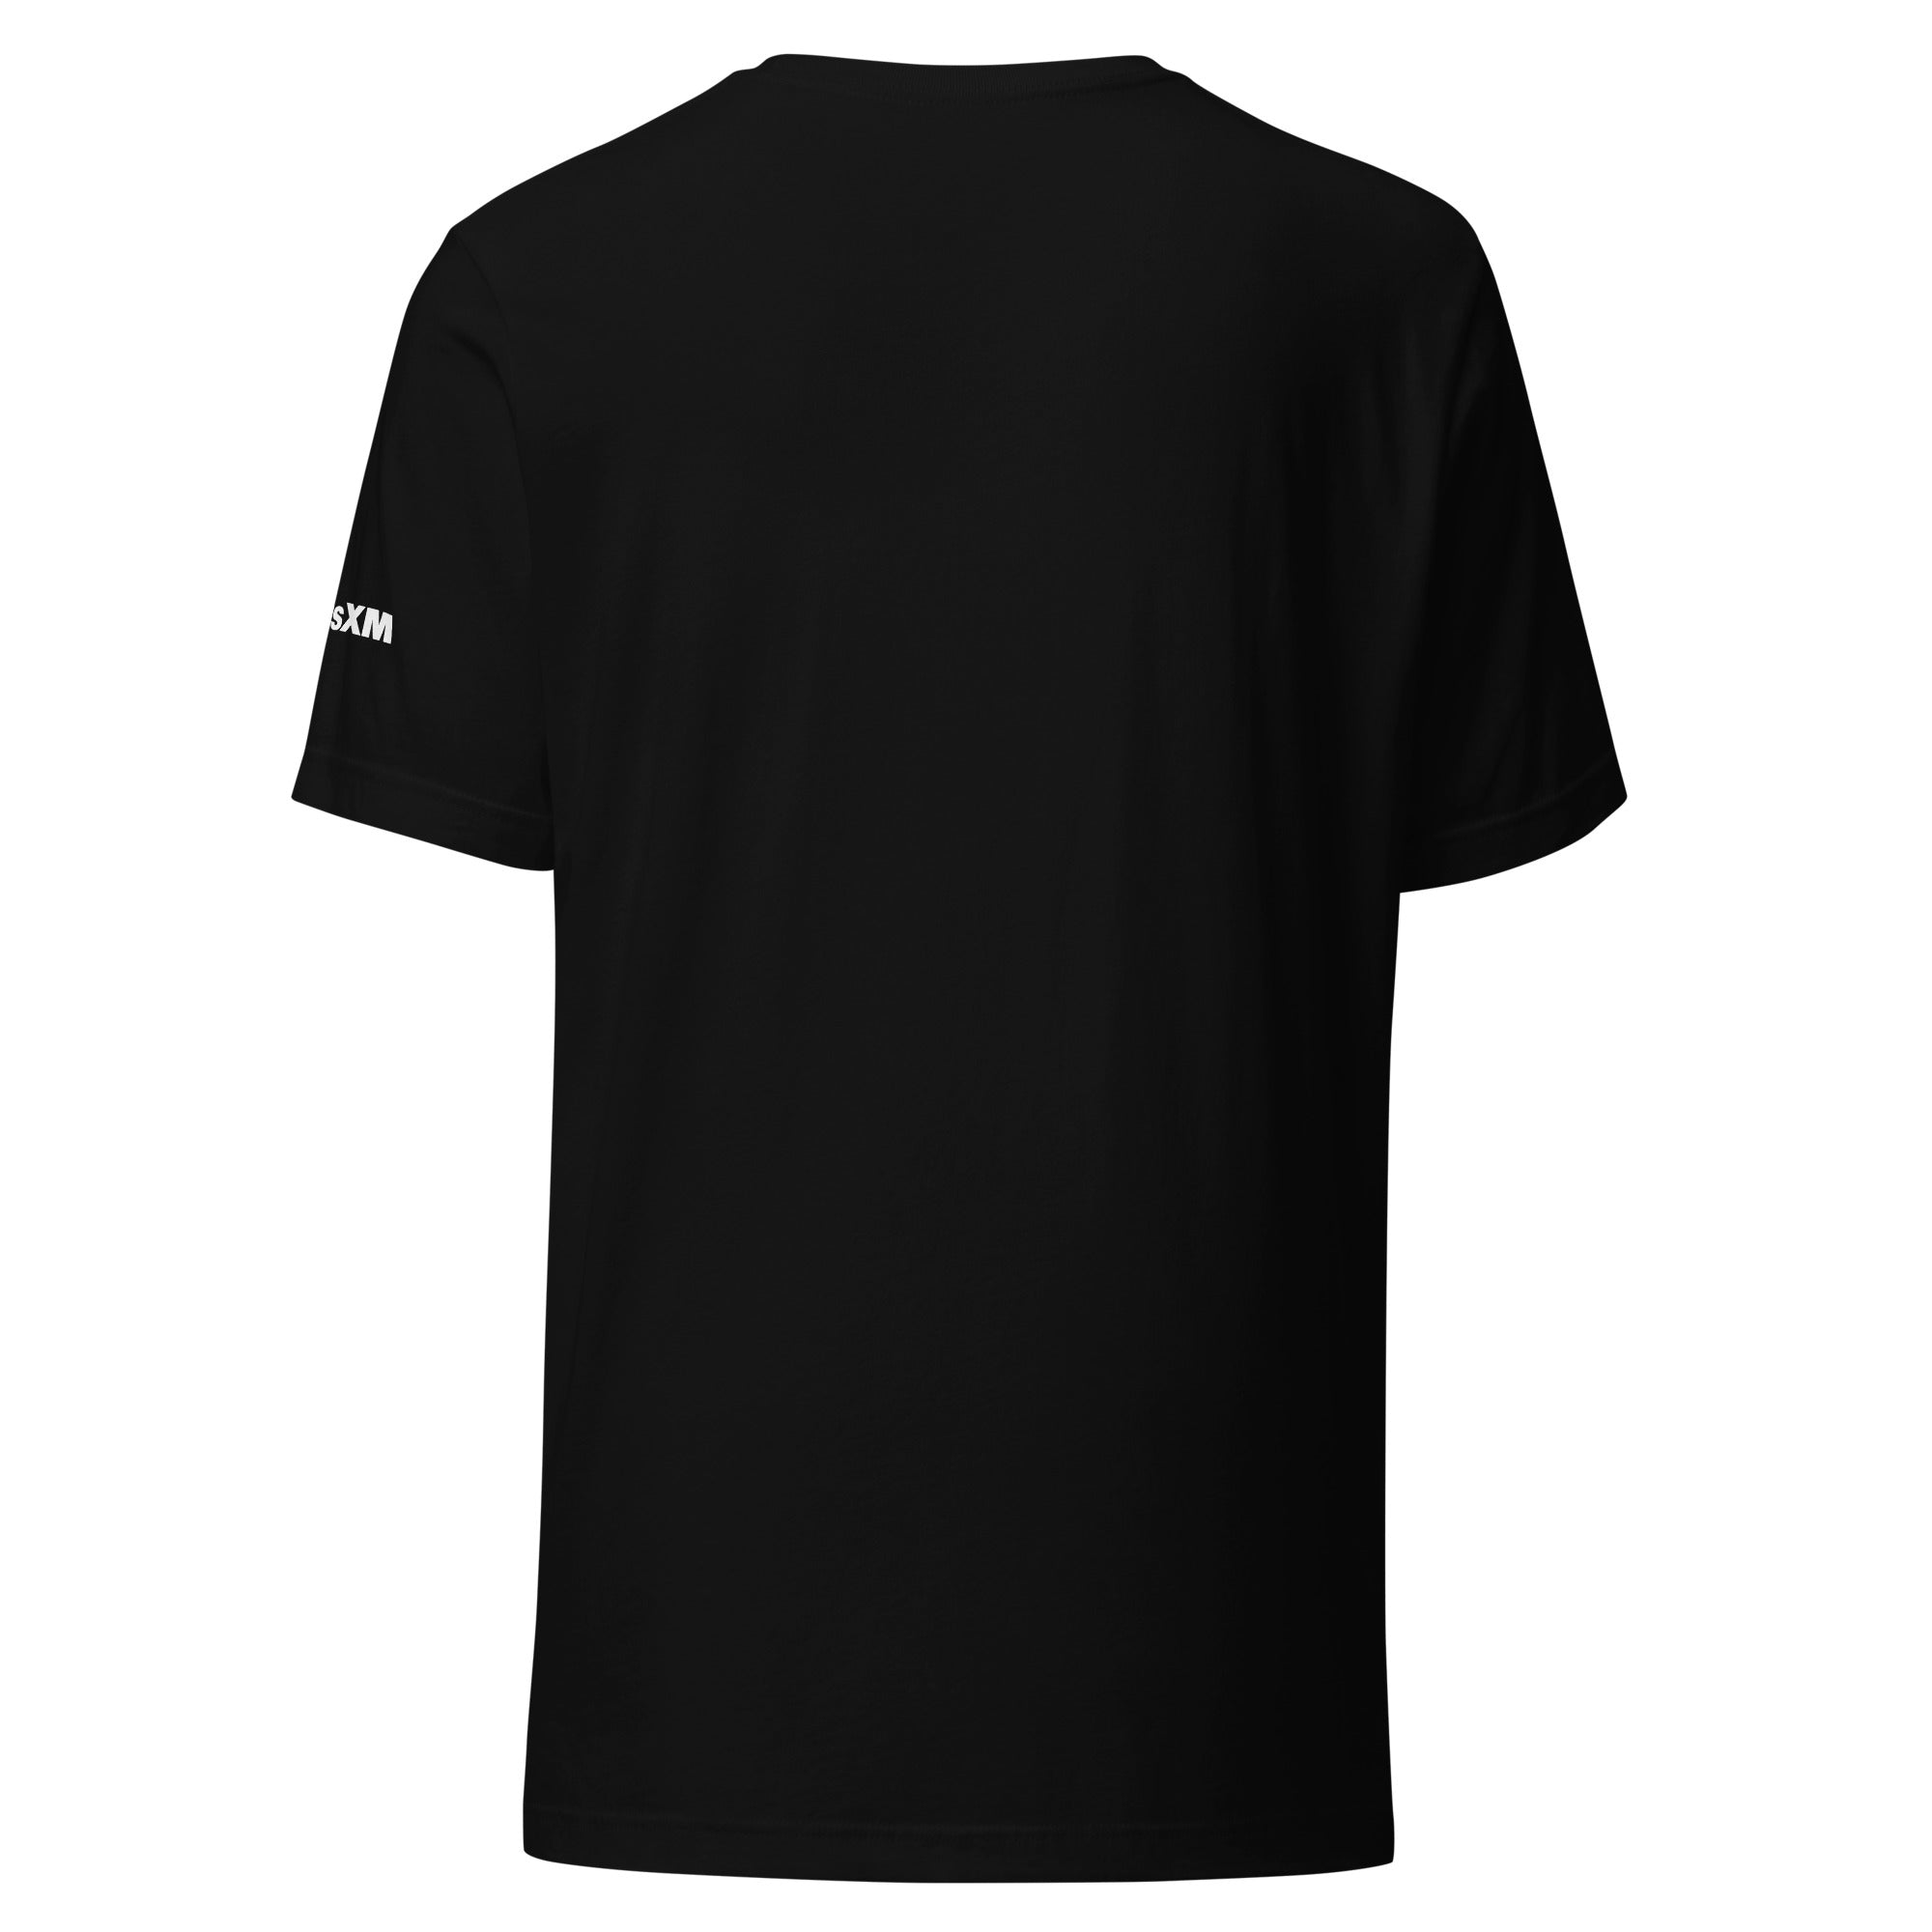 Latidos: T-shirt (Black)